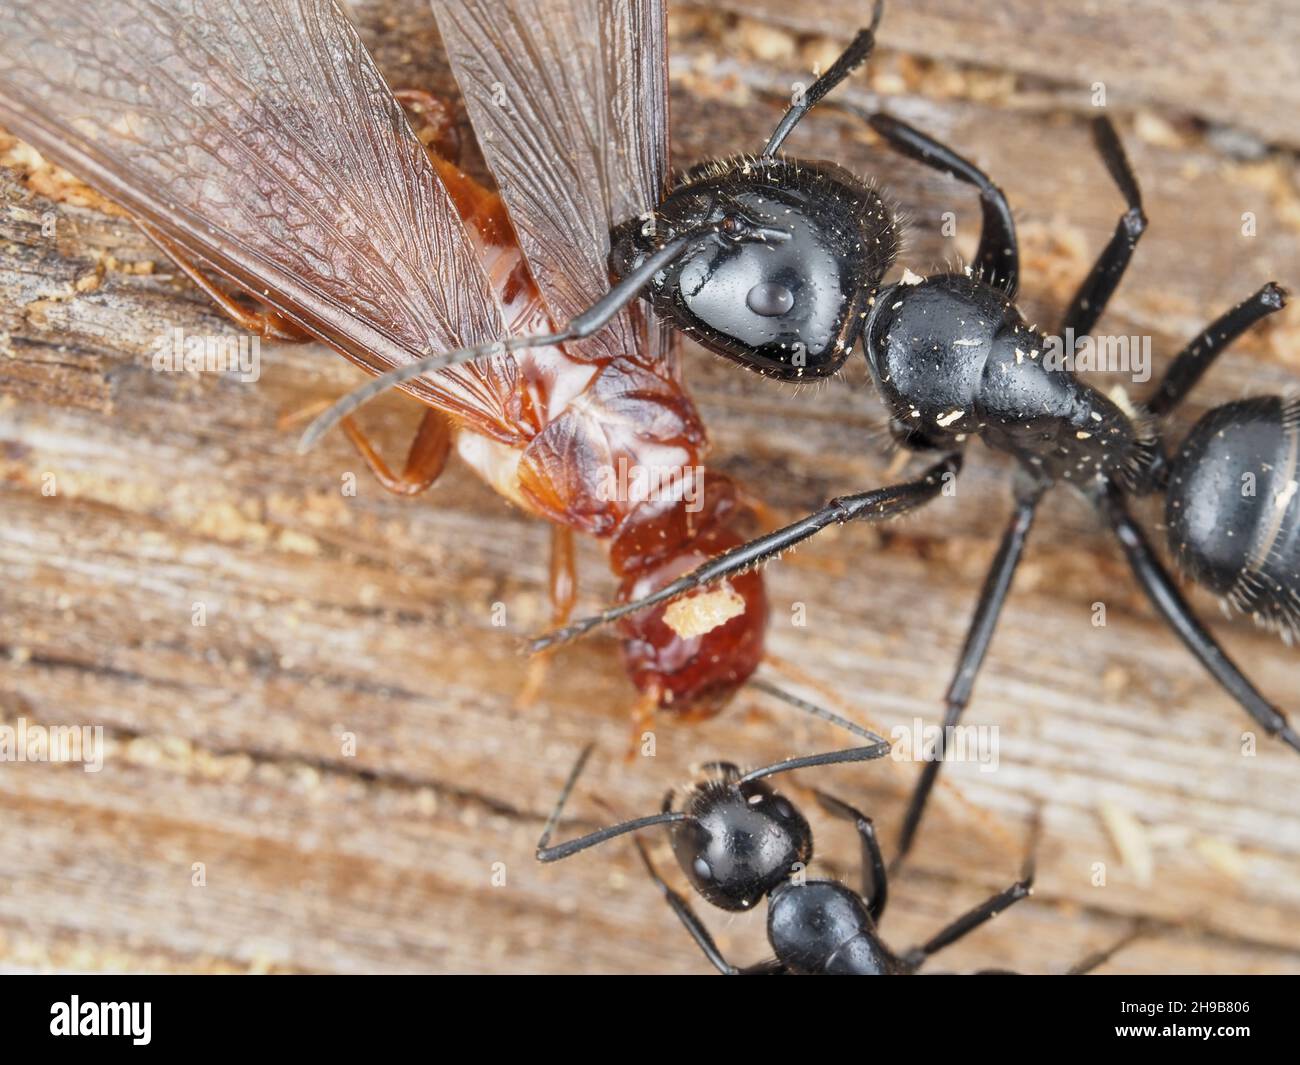 Hormigas carpinteras luchando contra una termita de madera de dampwood Foto de stock